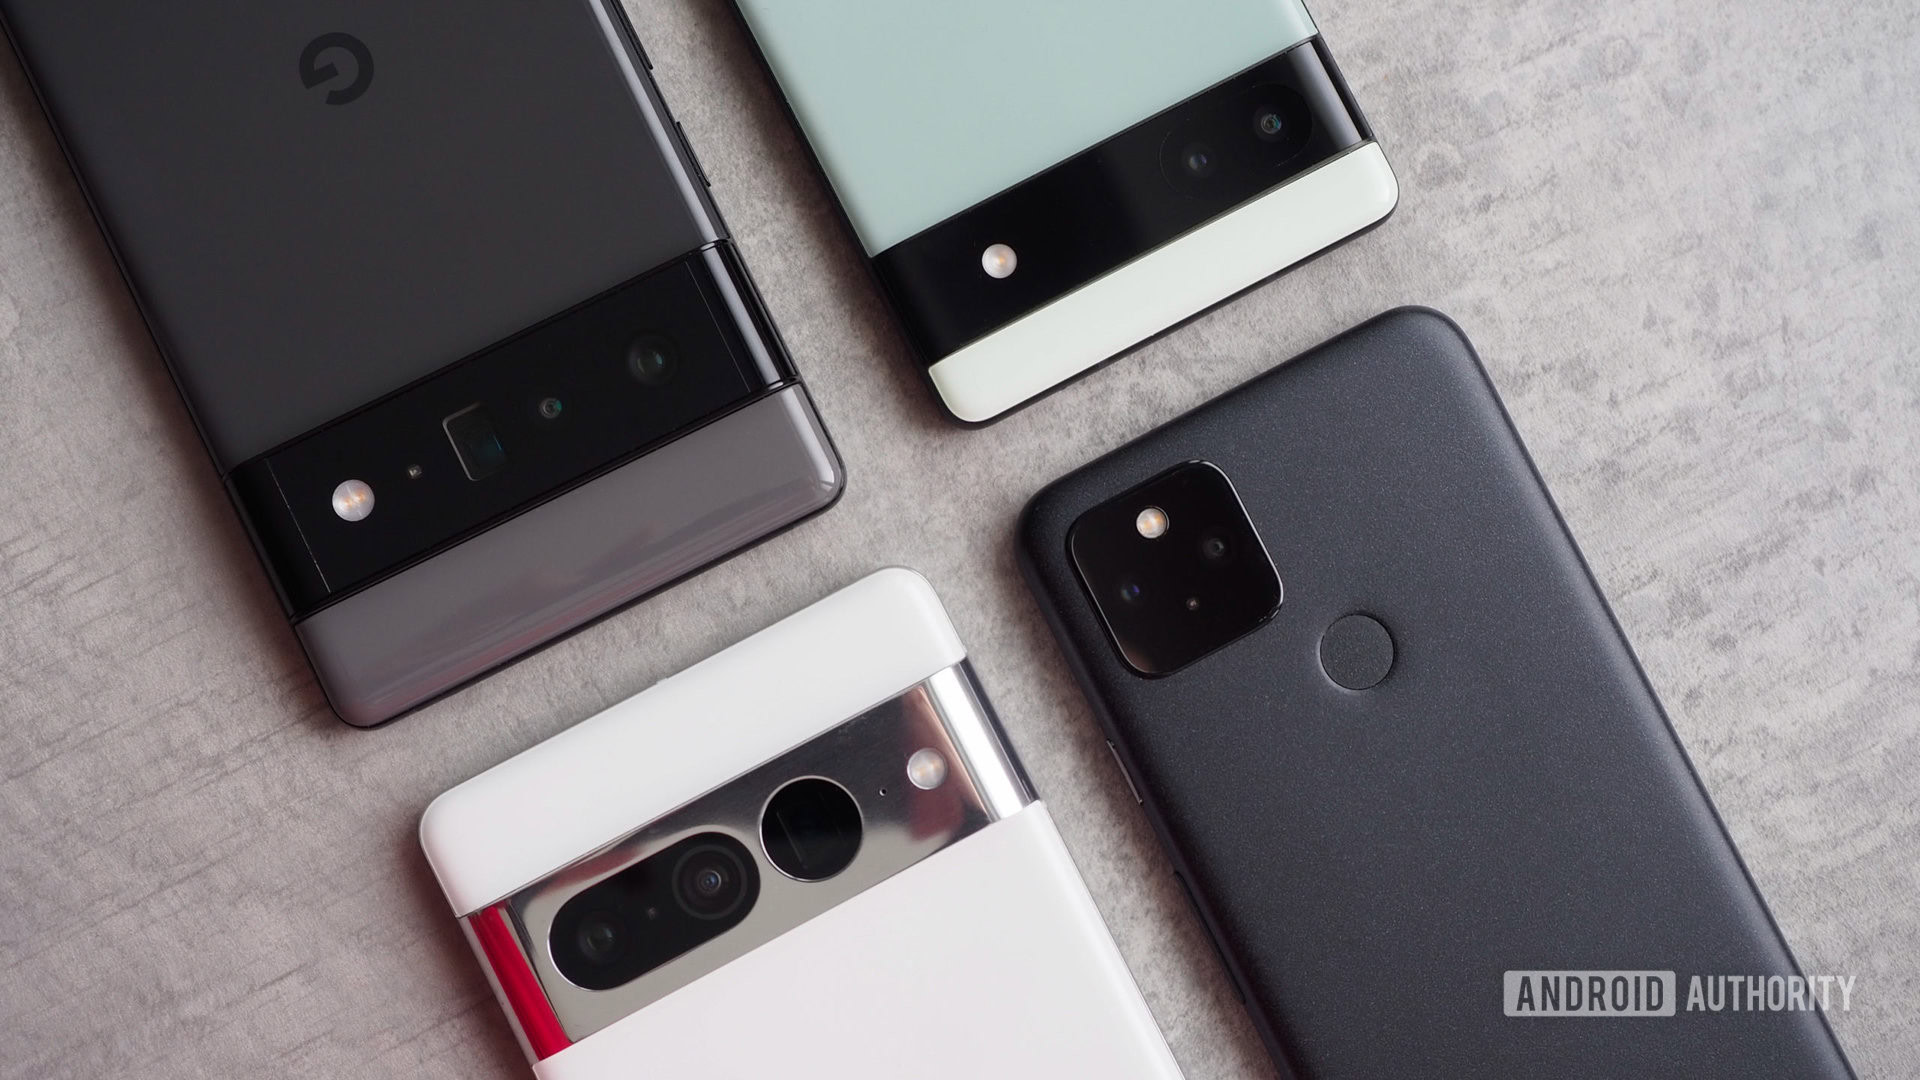 Buy Renewed/Refurbished Google Pixel Phones with Warranty